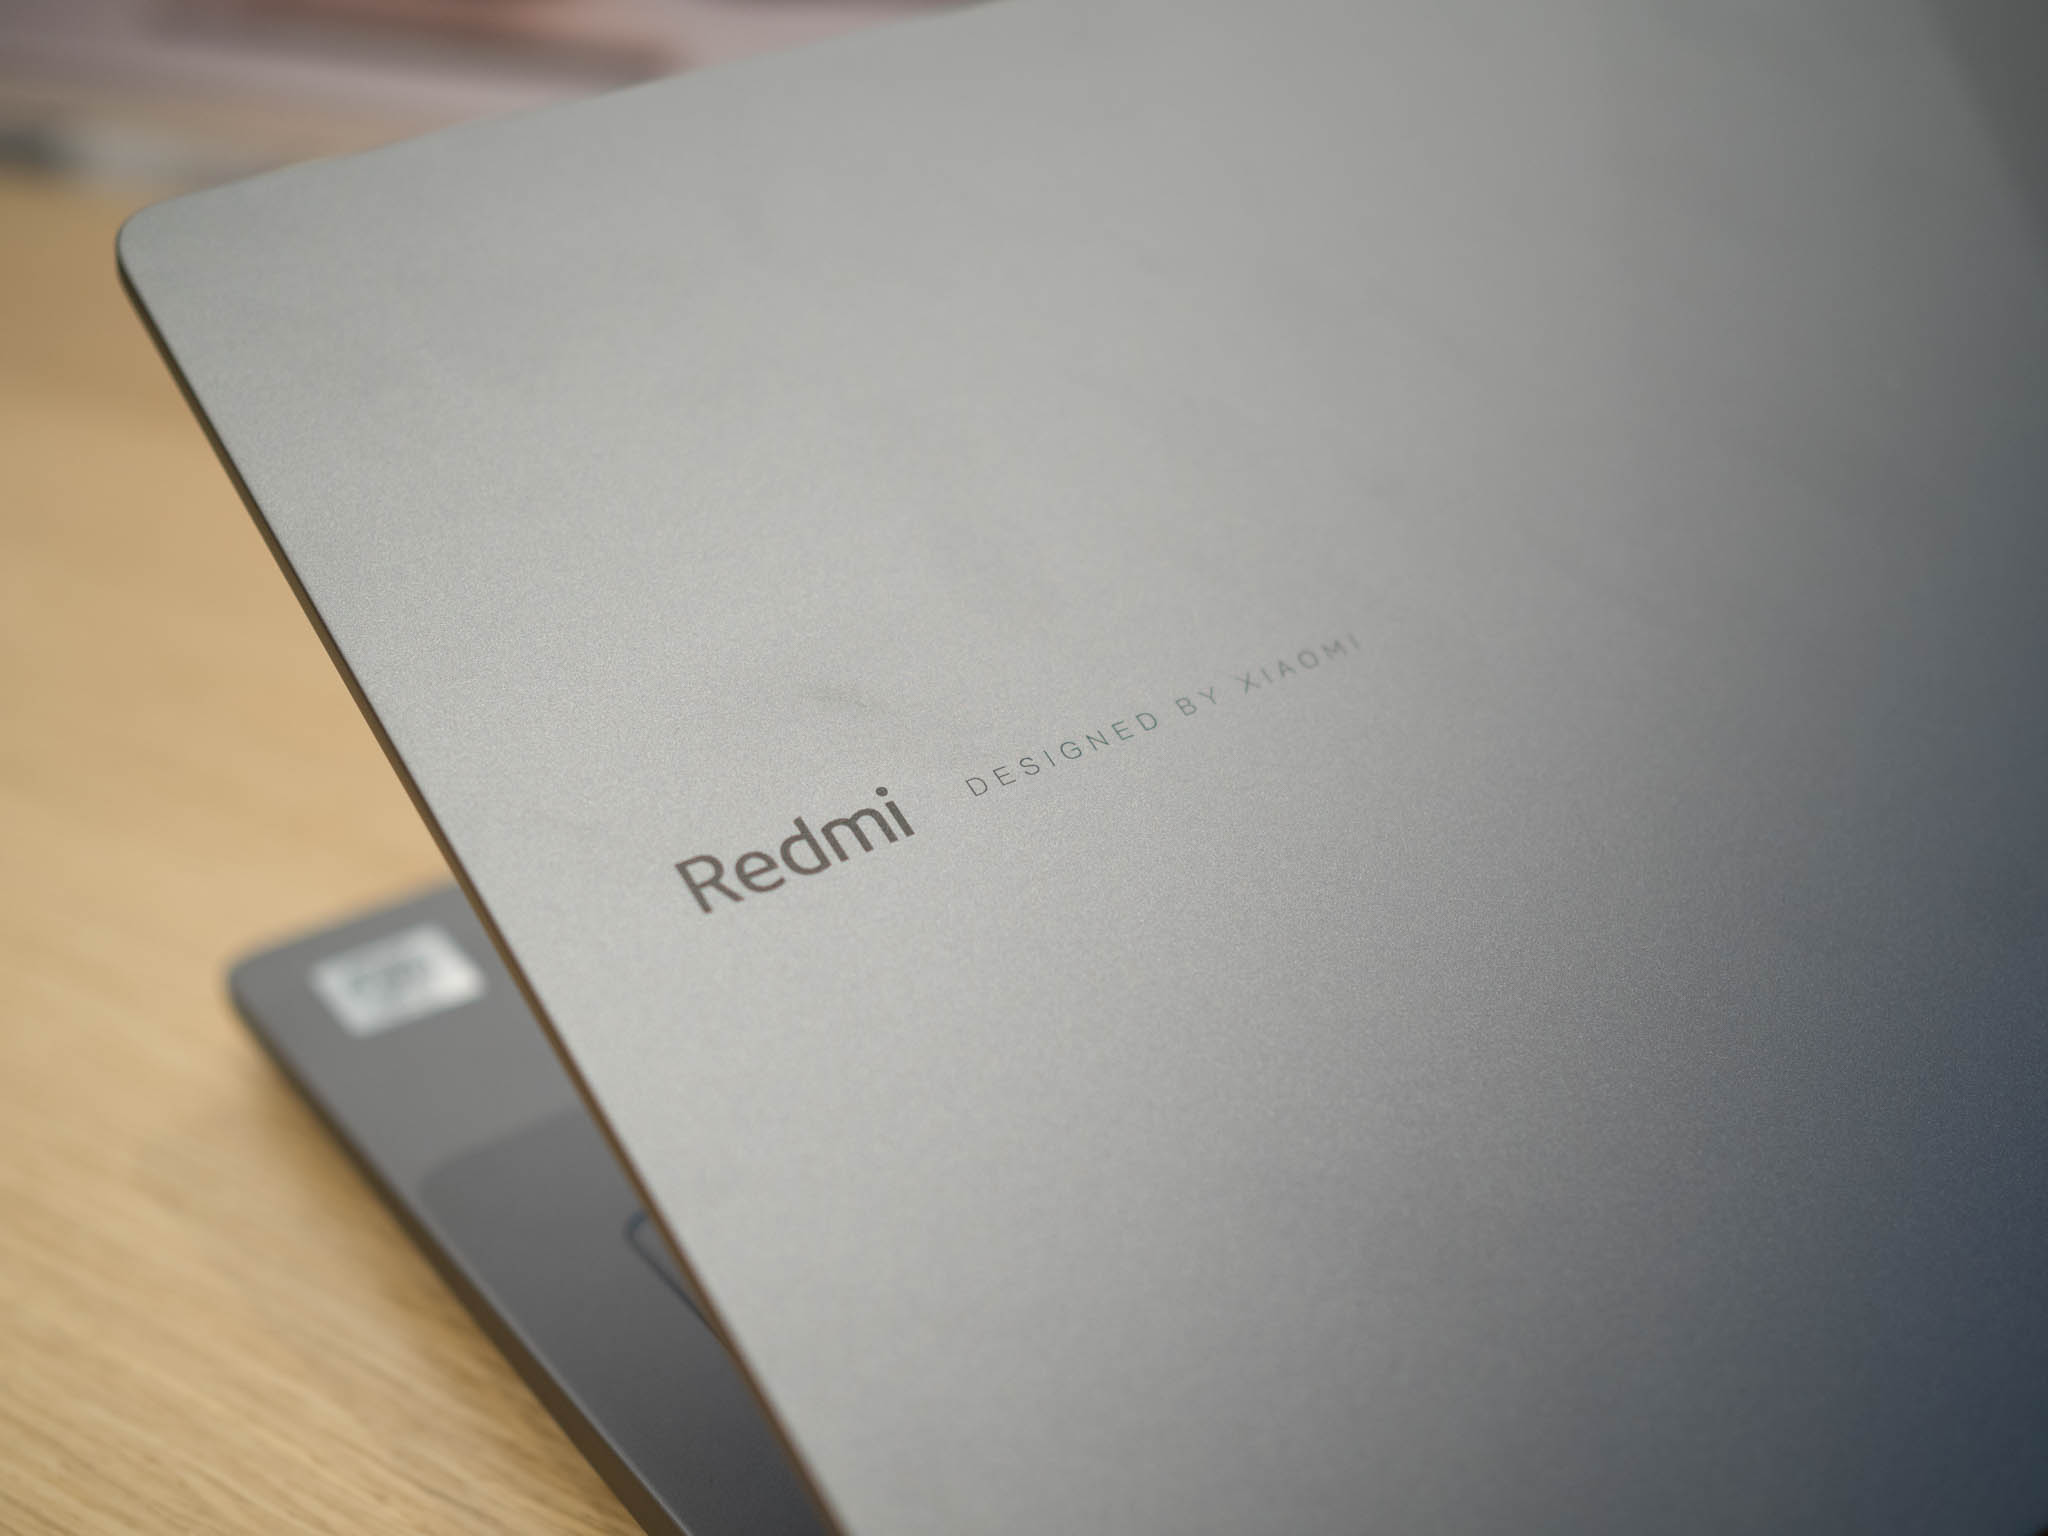 RedmiBook 14 hands-on